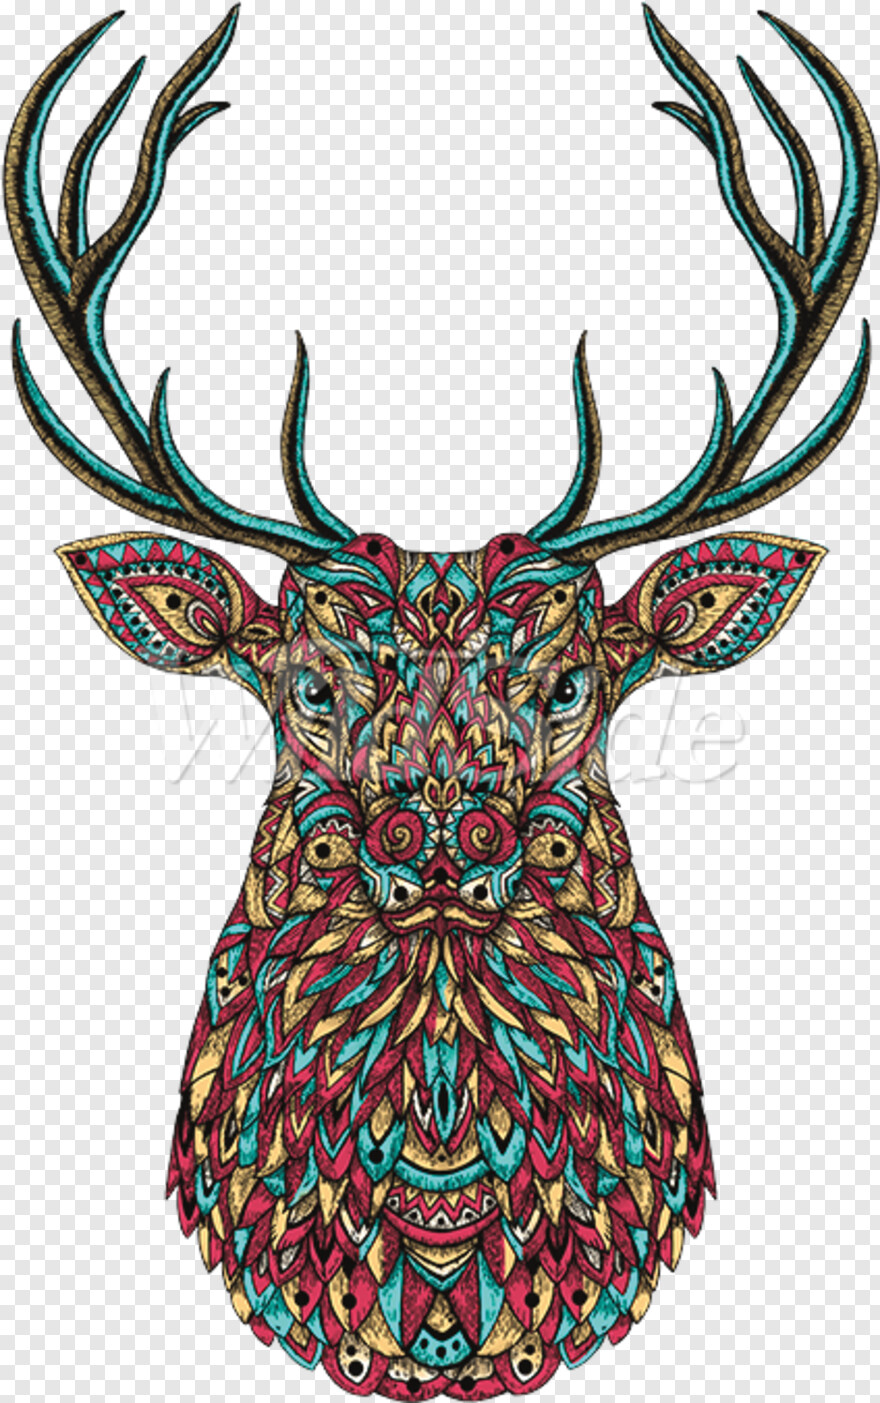 deer-head-silhouette # 918762